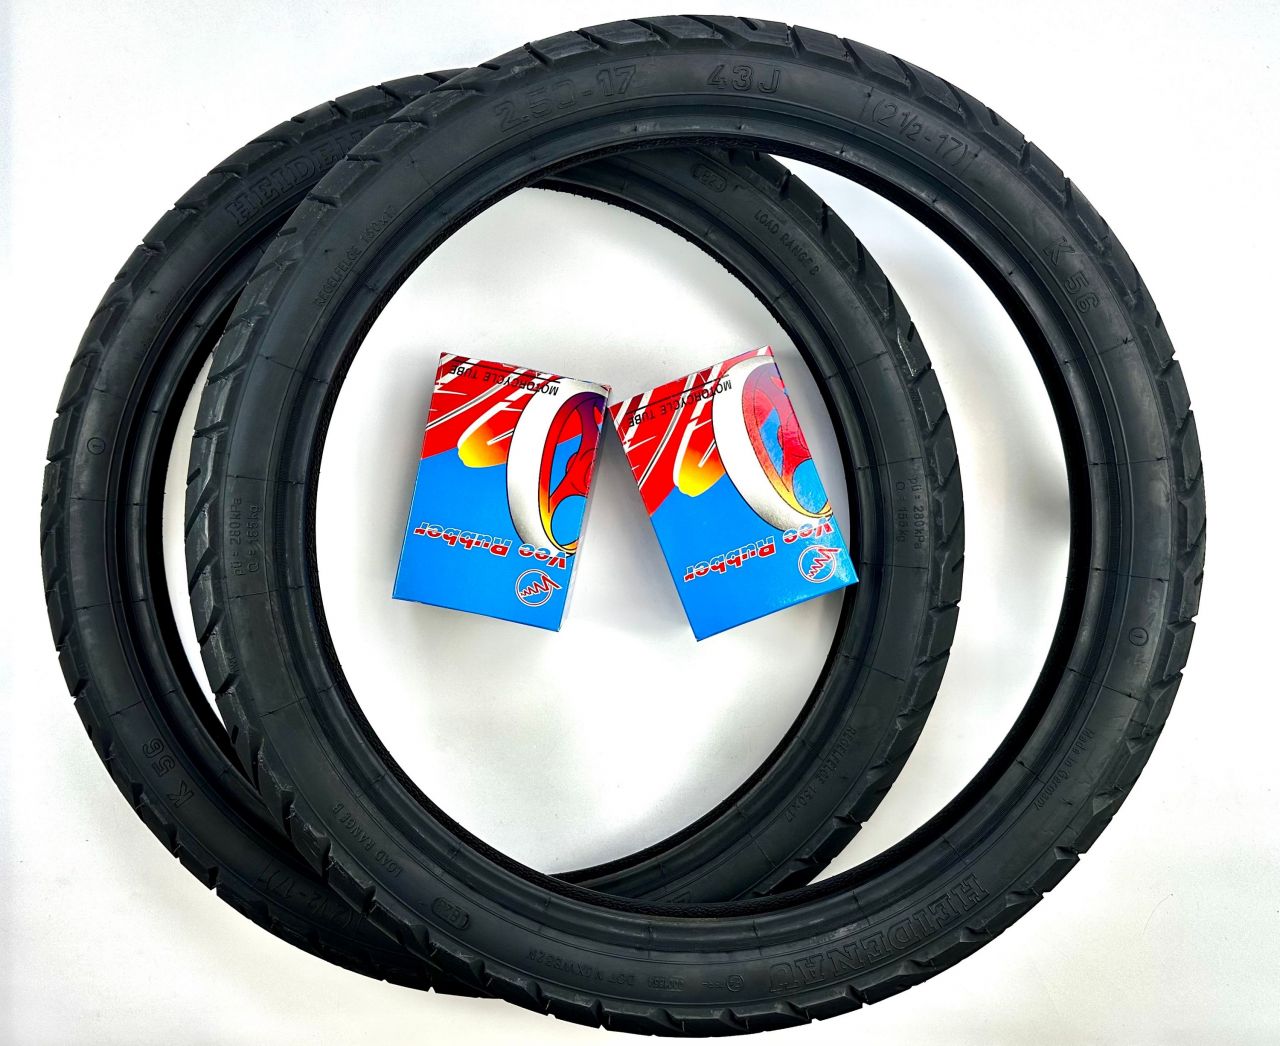 17 Zoll Reifen mit Schläuchen HEIDENAU K56 2.5 bzw. 2 1/2 x 17 von Vee Rubber